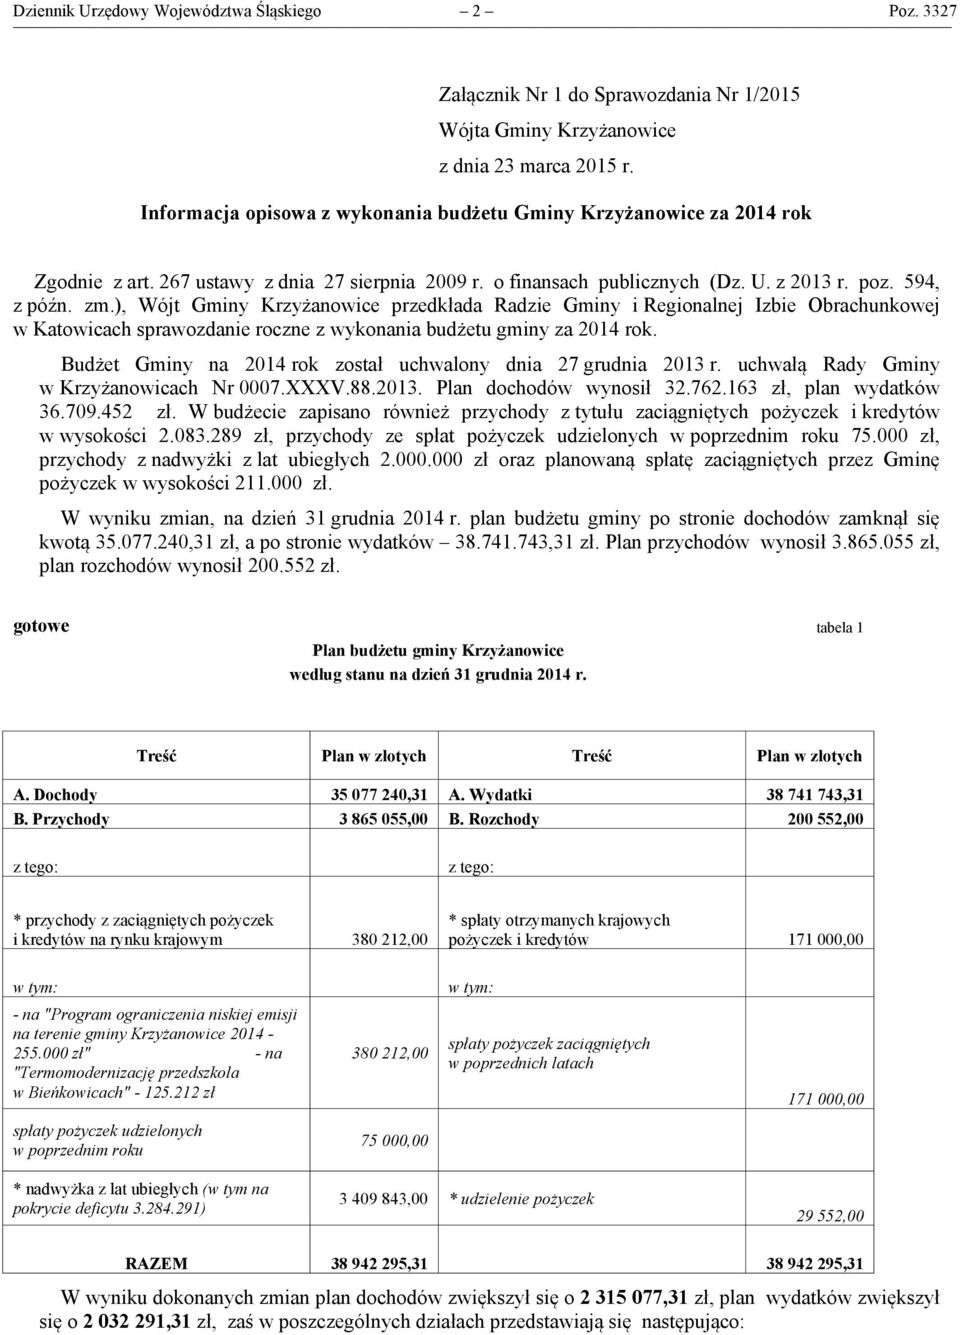 ), Wójt Gminy Krzyżanowice przedkłada Radzie Gminy i Regionalnej Izbie Obrachunkowej w Katowicach sprawozdanie roczne z wykonania budżetu gminy za 2014 rok.